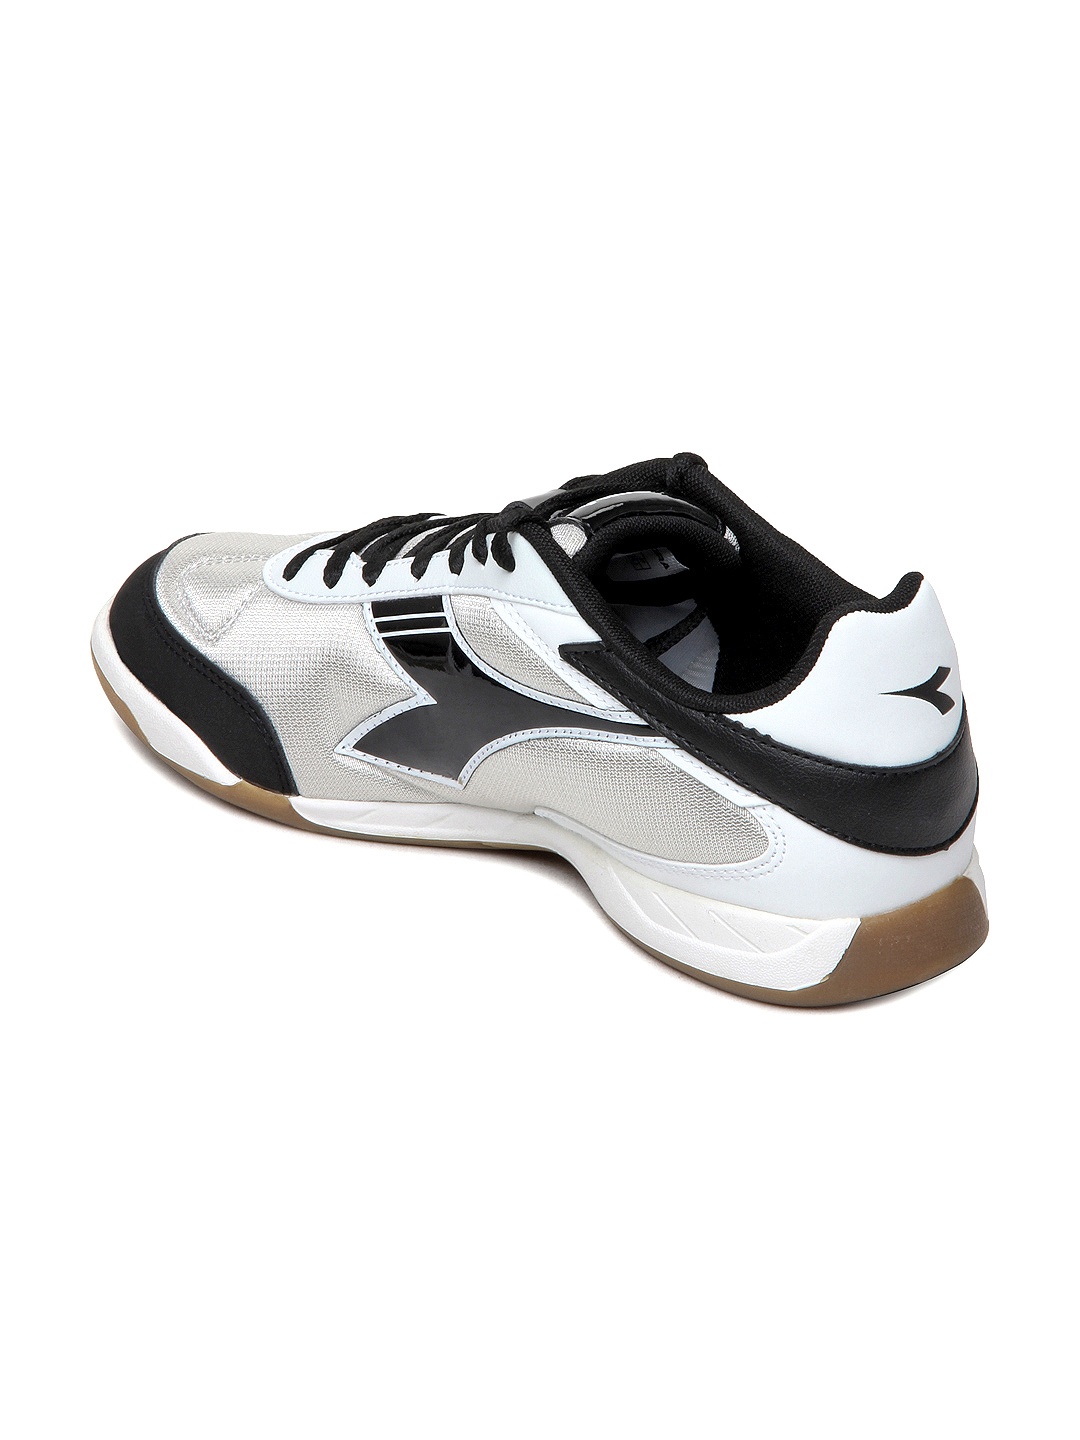 Myntra Diadora Men Black & White 830 ID Sports Shoes 220950 | Buy ...